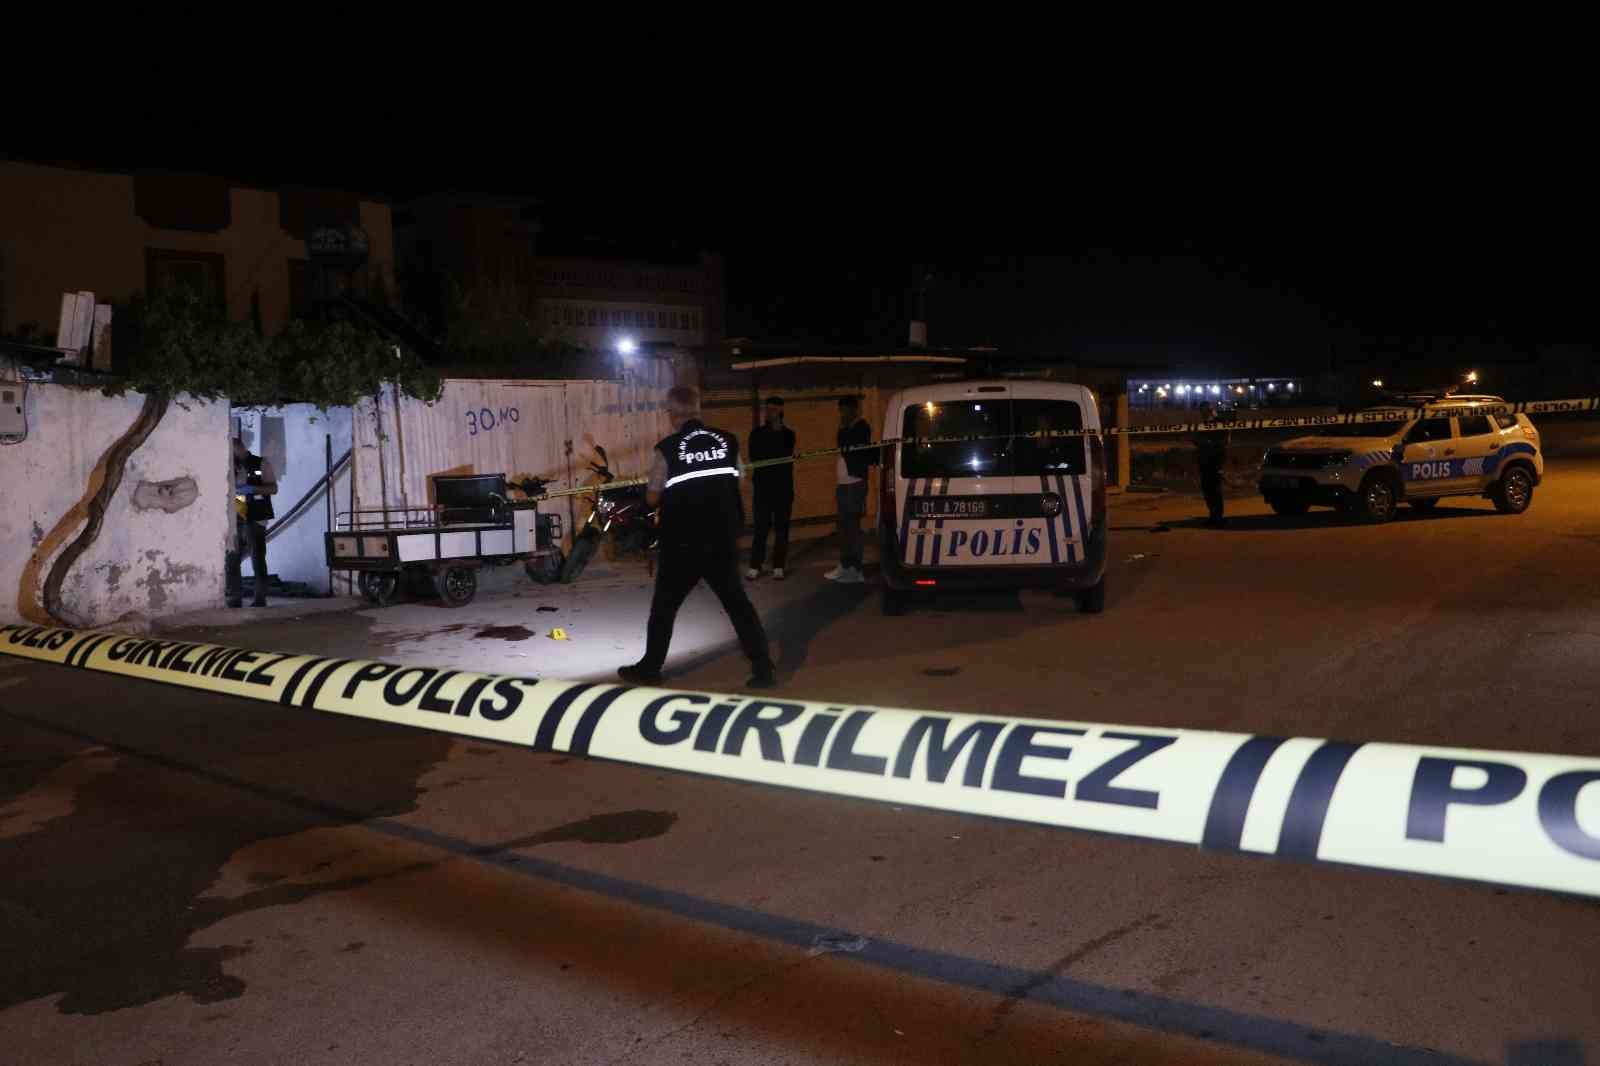 Silahlı kavgada yüzünden pompalı tüfekle vurulan kişi ağır yaralandı #adana